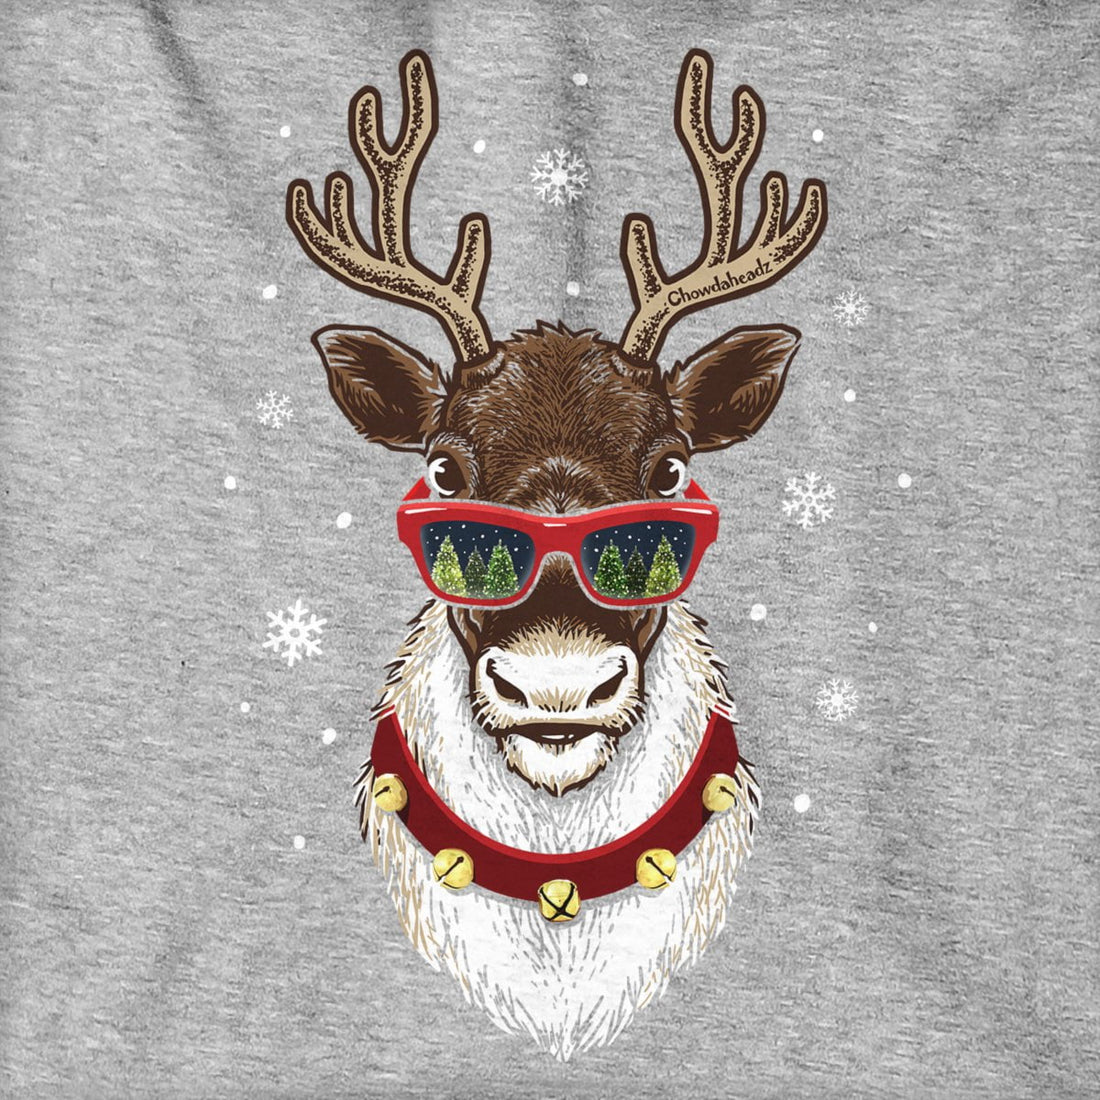 Cool Christmas Reindeer Hoodie - Chowdaheadz